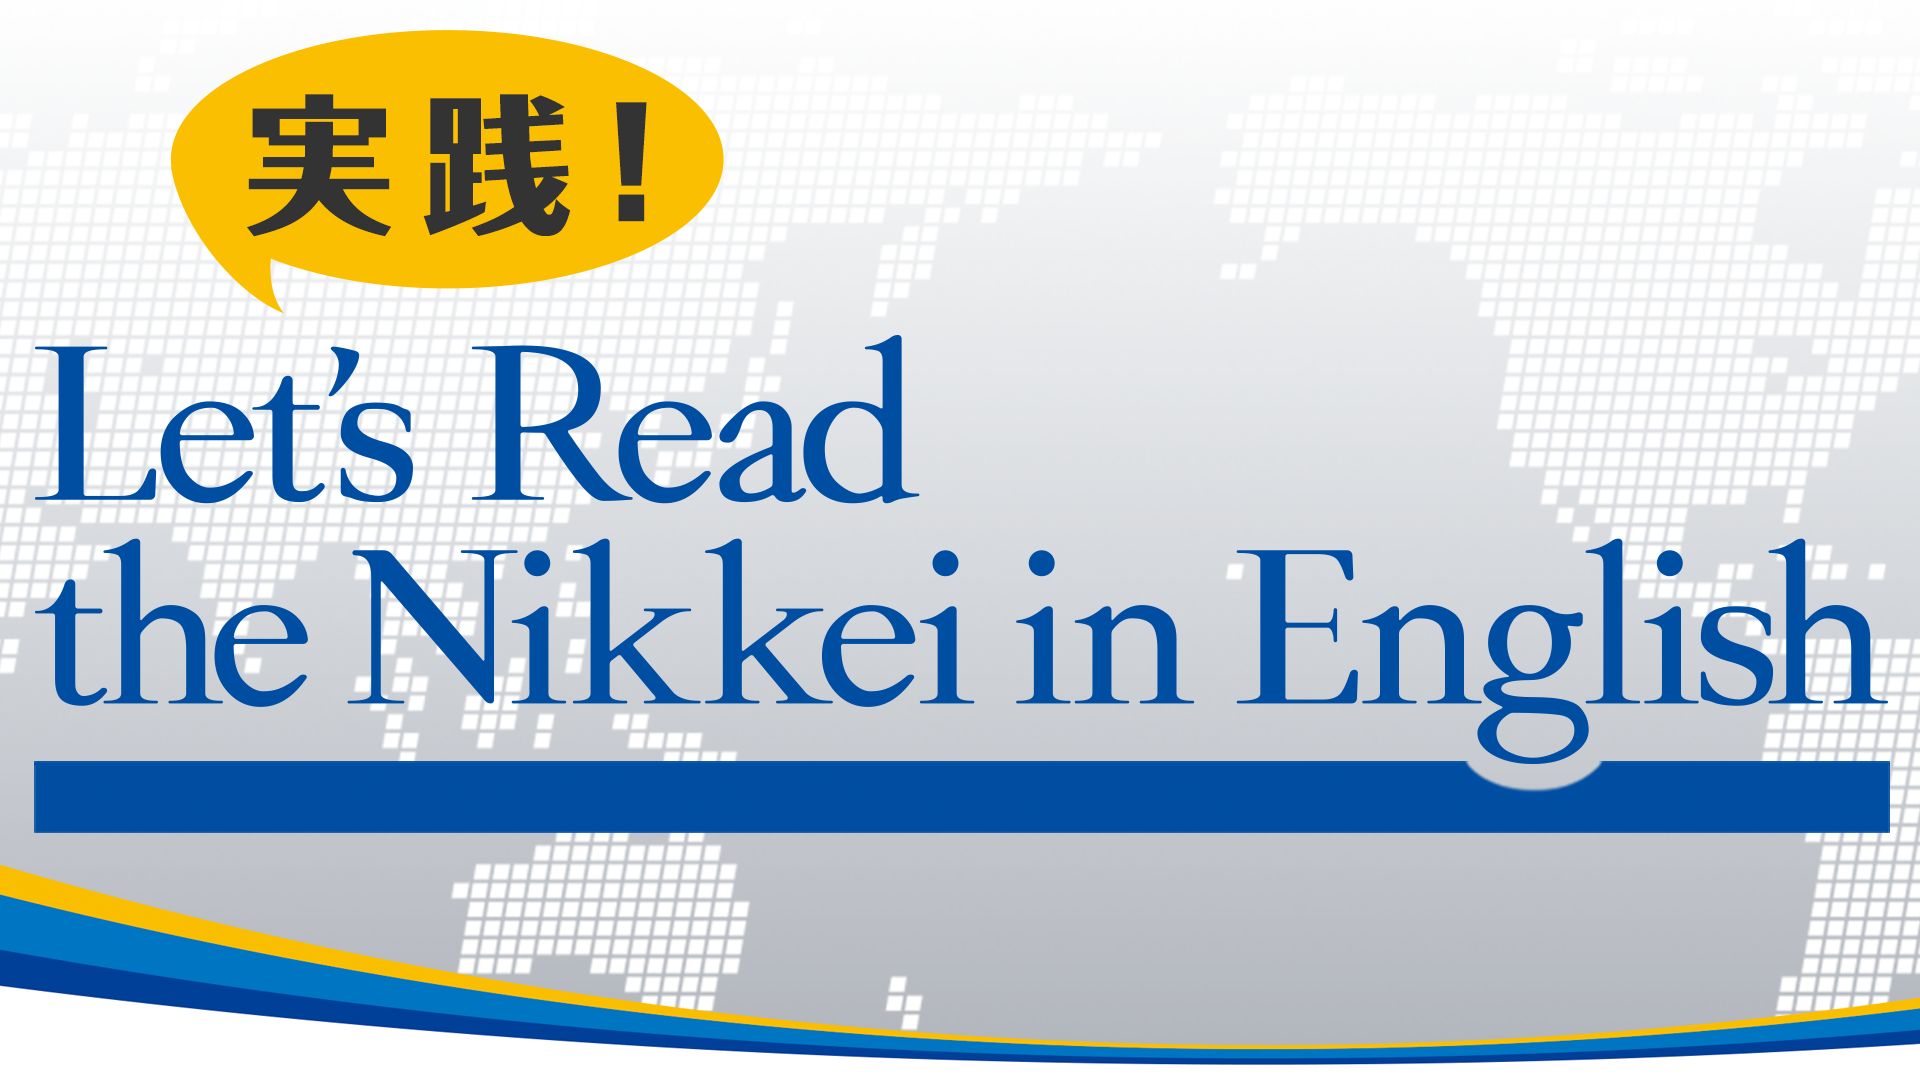 実践!Let’s Read the Nikkei in English